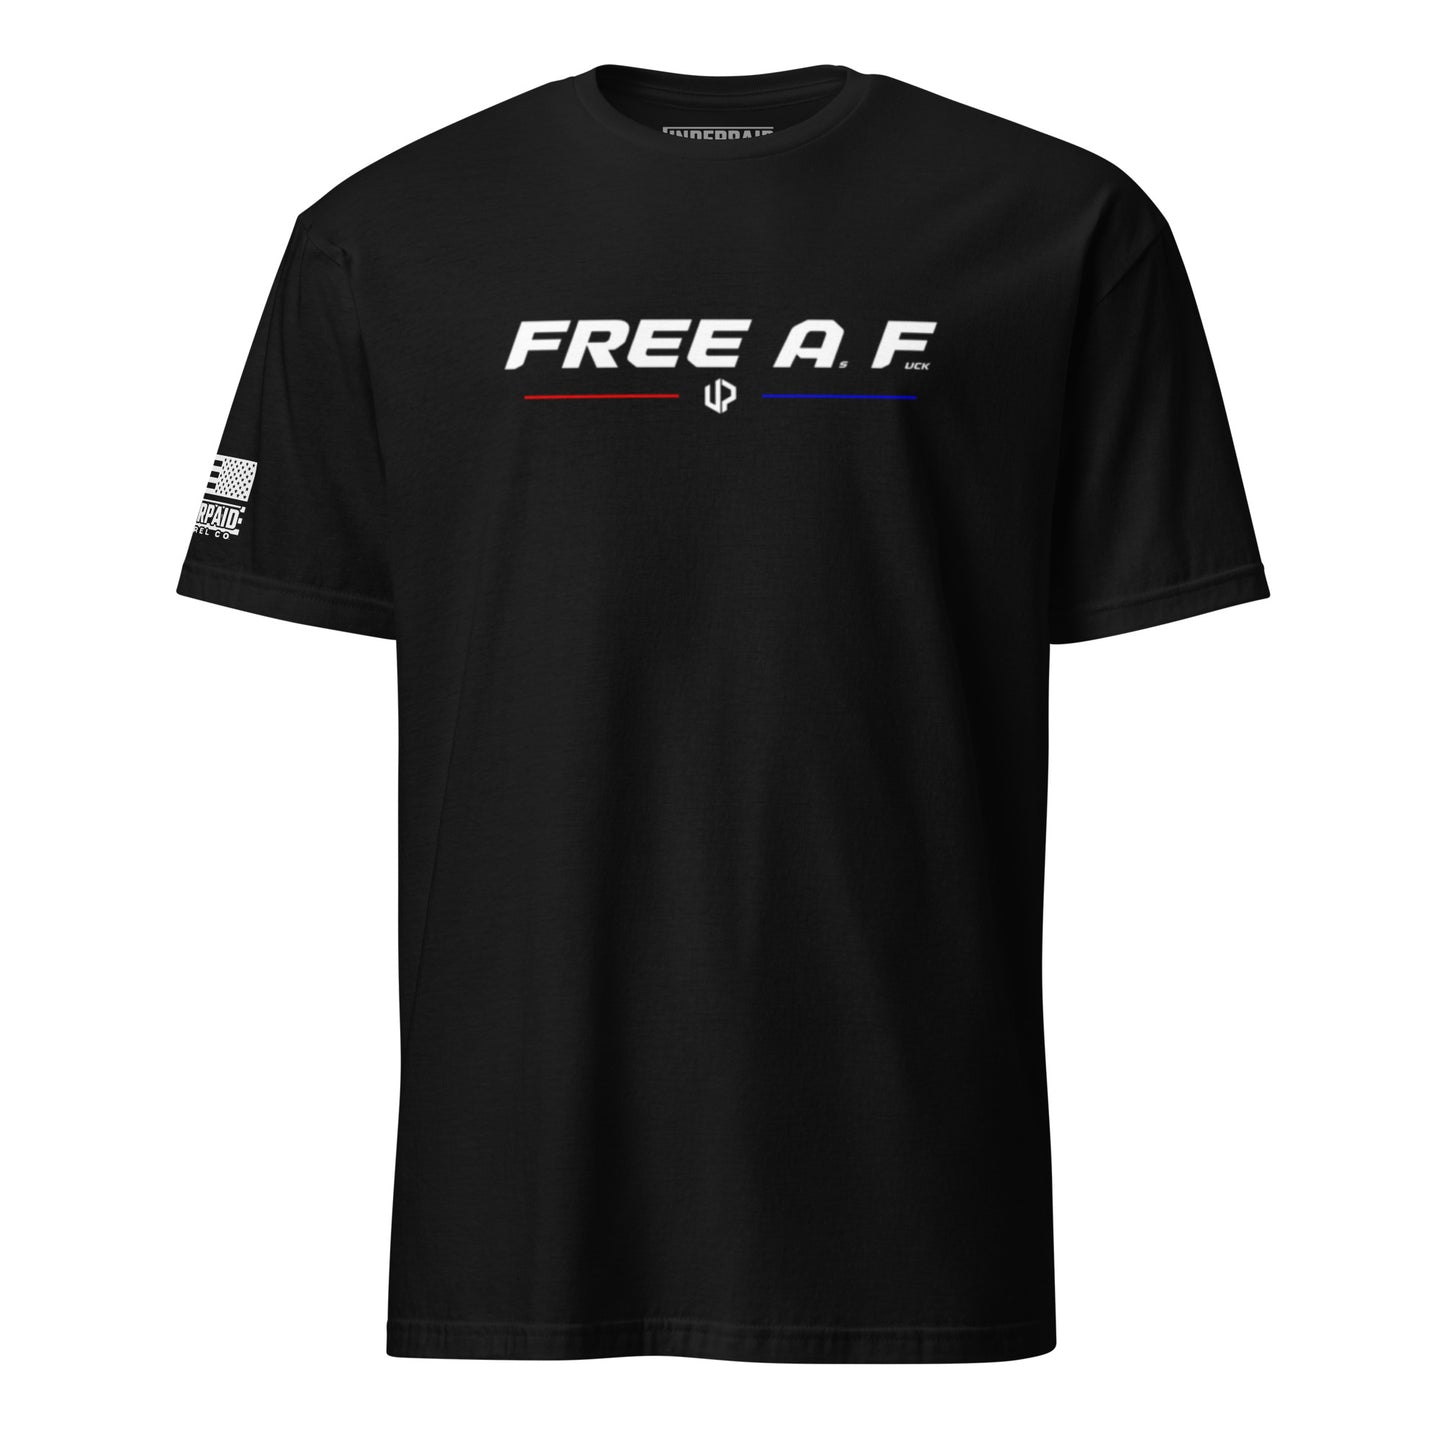 FREE A.F.-S/S Tee